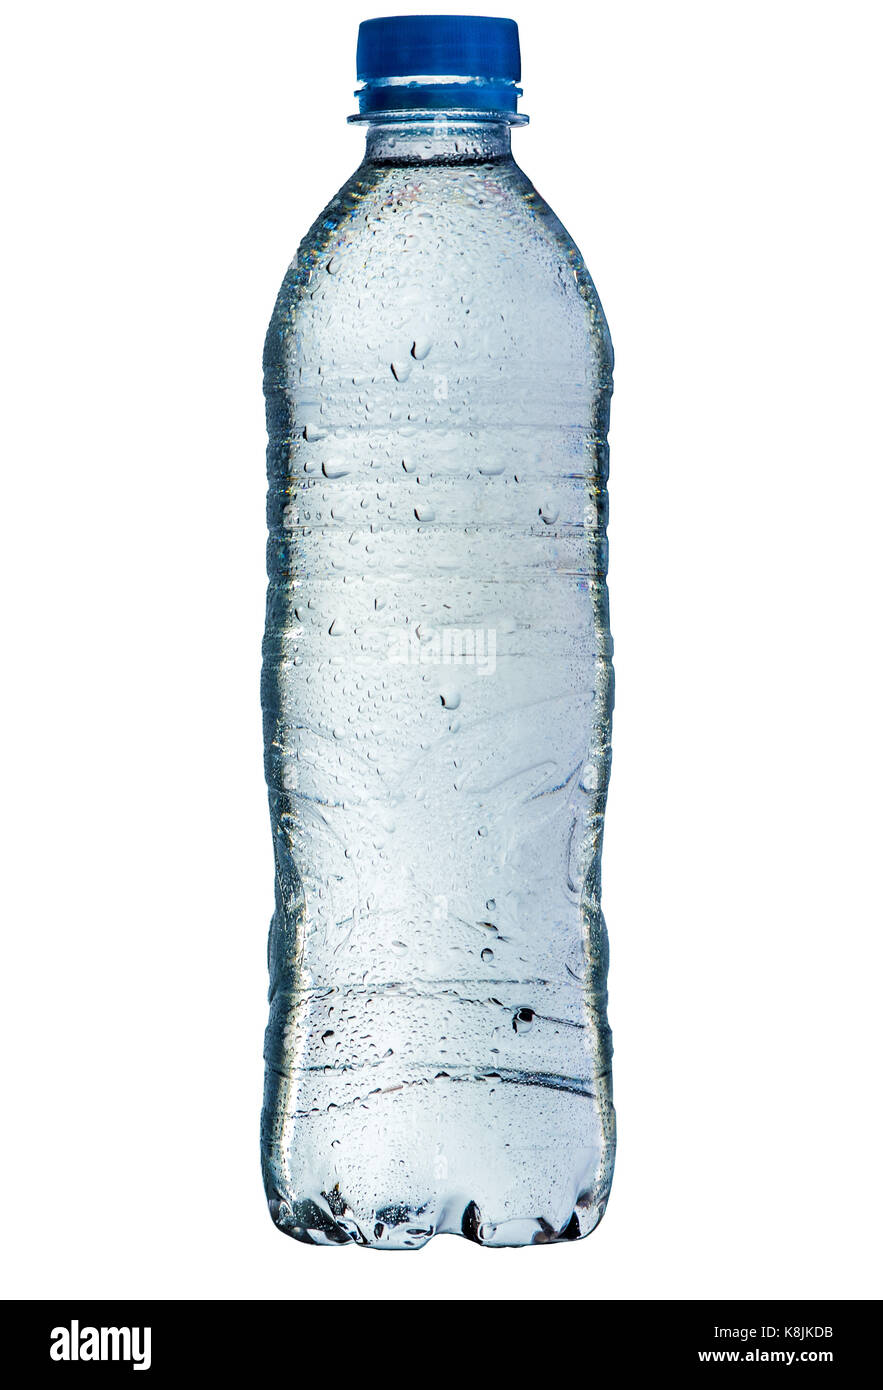 Kunststoff blau Flasche Wasser nass mit Wassertropfen, voll, geschlossen,  auf weißem Hintergrund Stockfotografie - Alamy